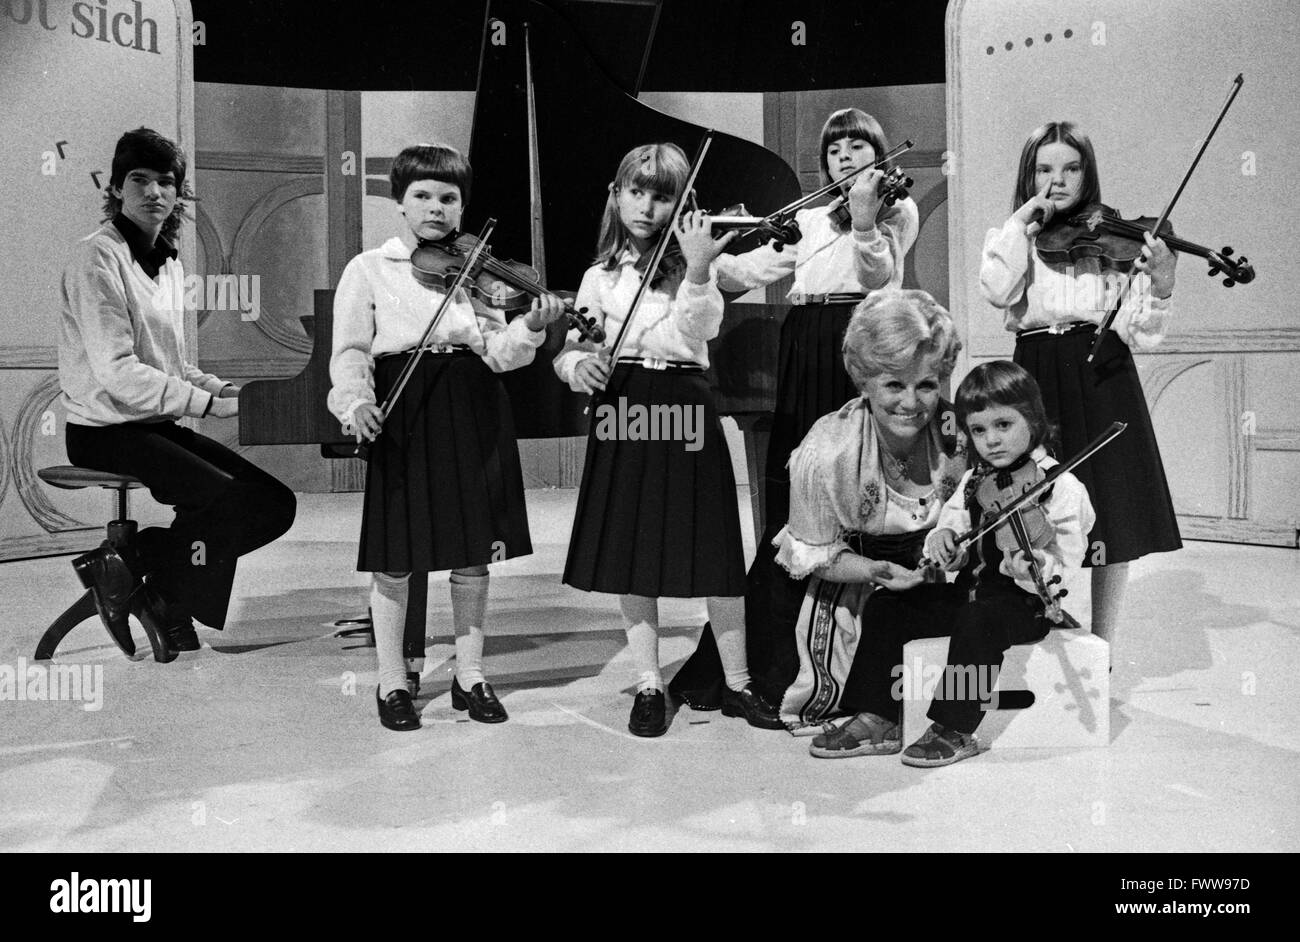 Früh übt sich, Maria Hellwig präsentiert junge Talente der Volksmusik, Deutschland 1981 Stock Photo